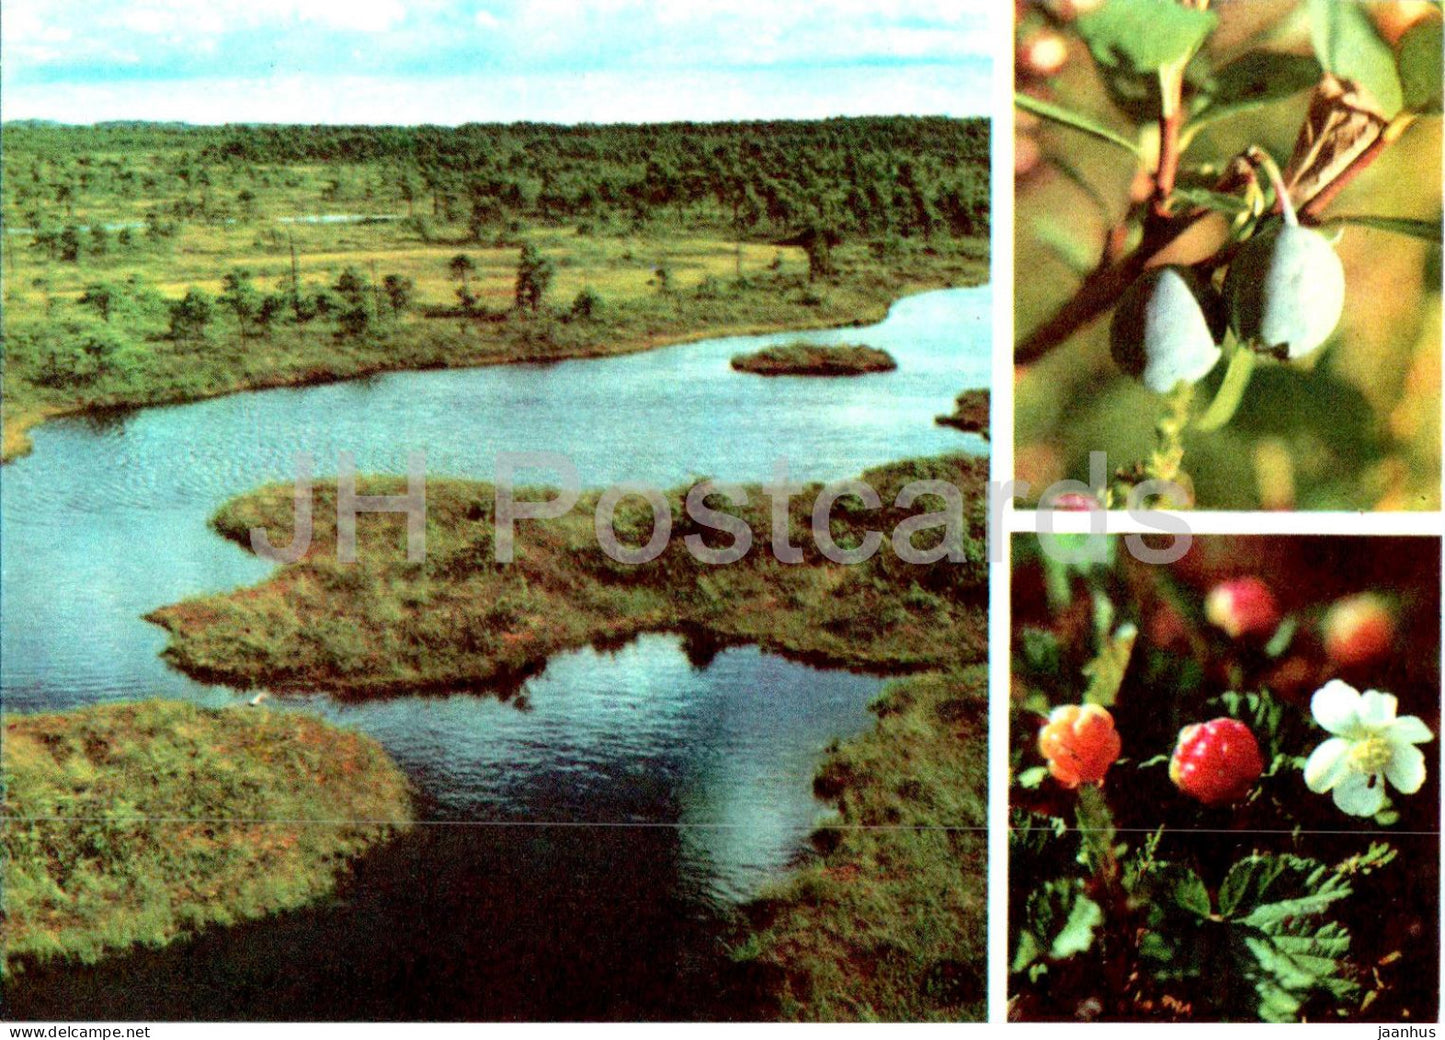 Bog Bilberry - Vaccinium uliginosum - Cloudberry - Rubus chamaemorus - berries - plants - 1977 - Estonia USSR - unused - JH Postcards